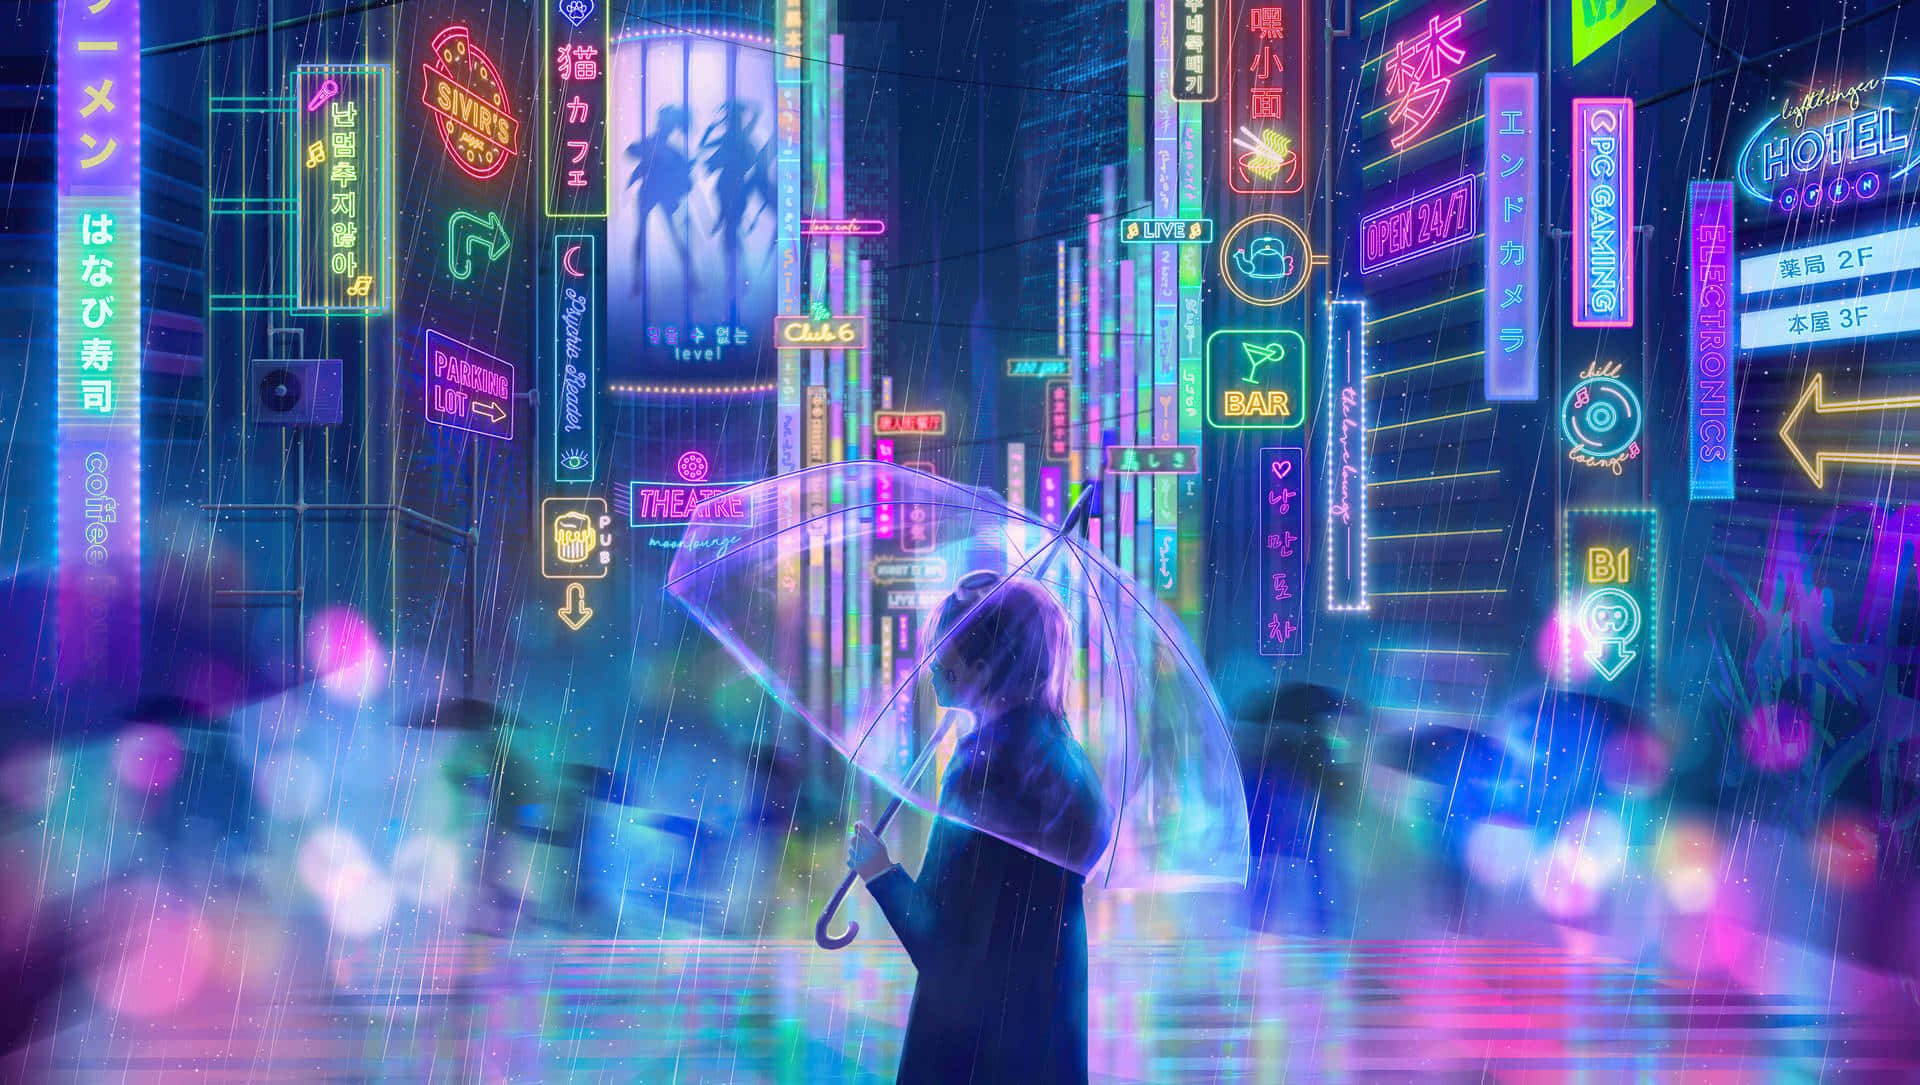 Neon Umbrella City Background